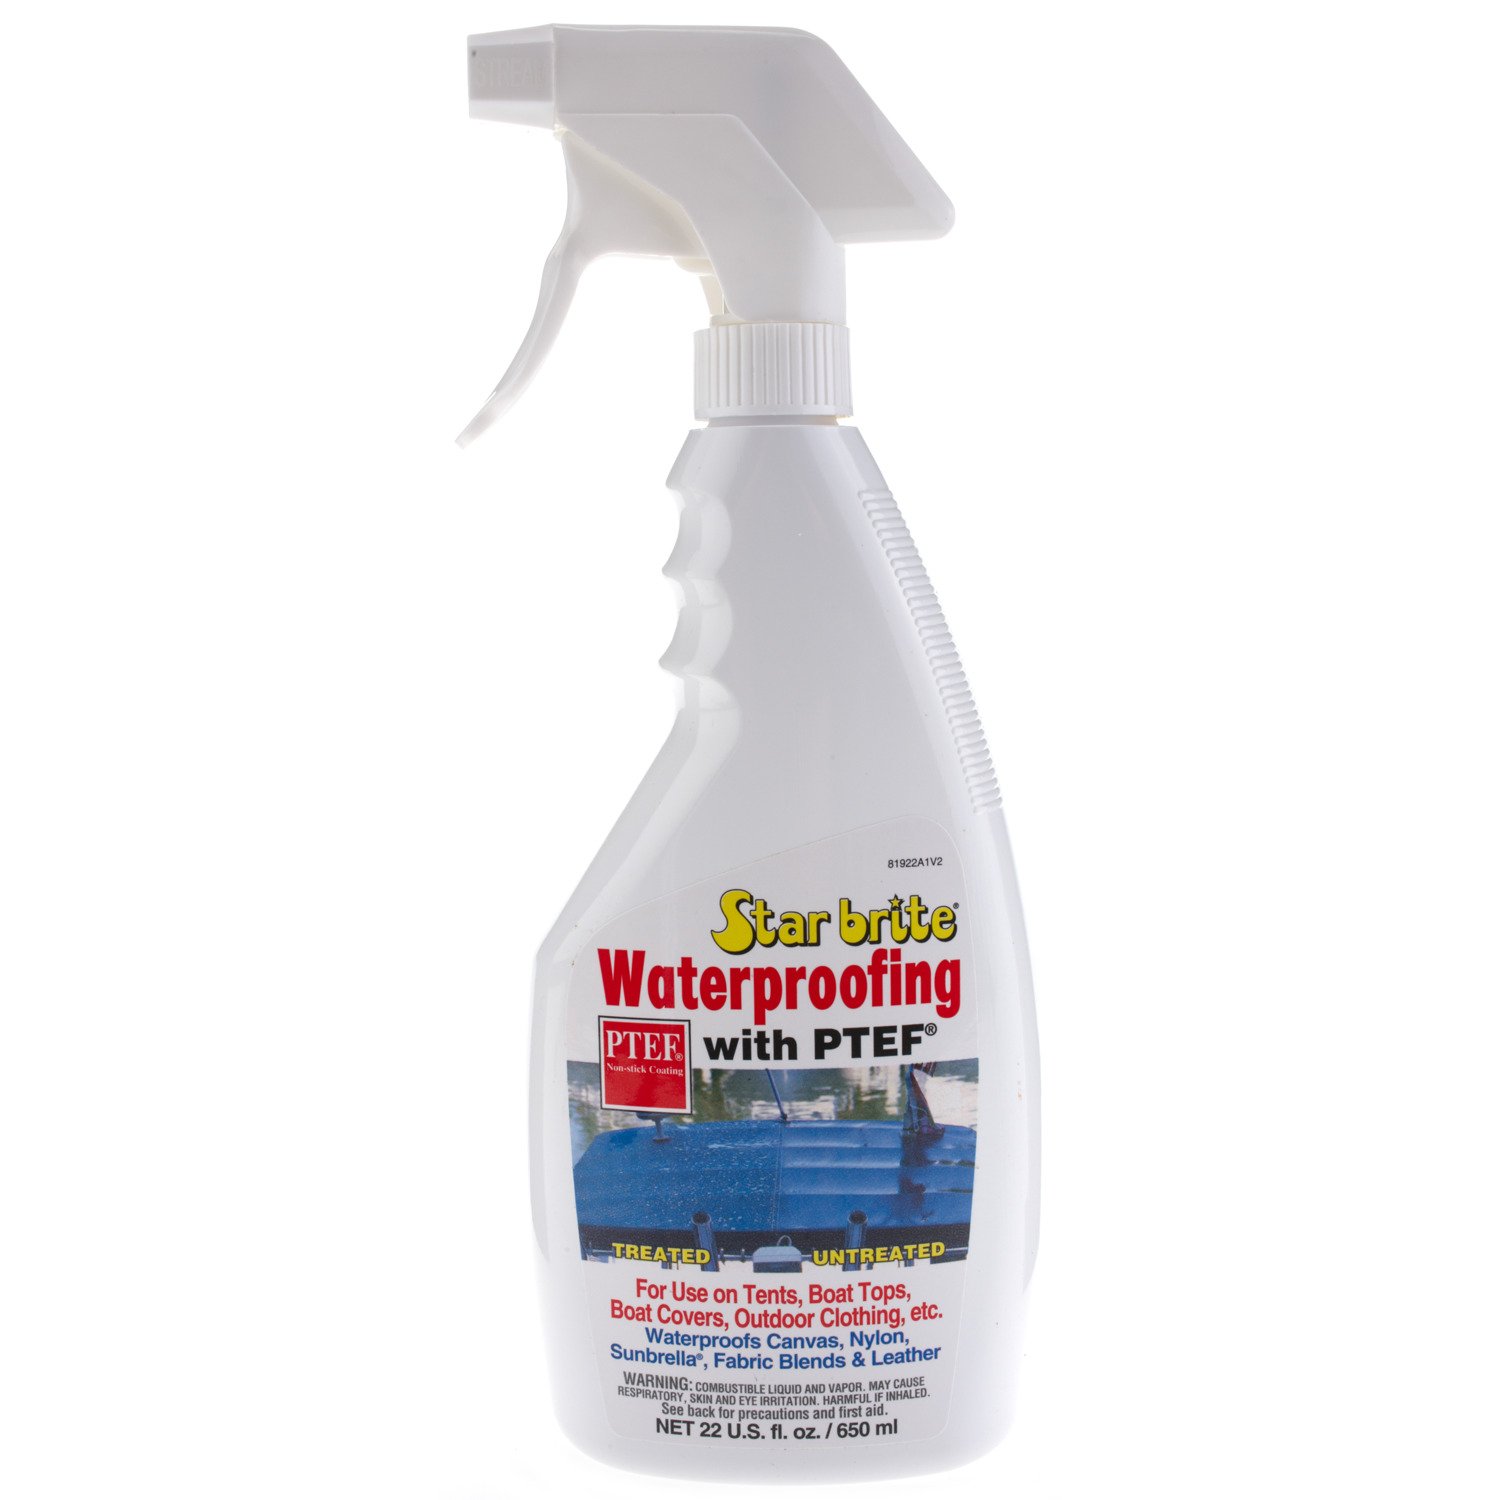 Waterproofing Spray